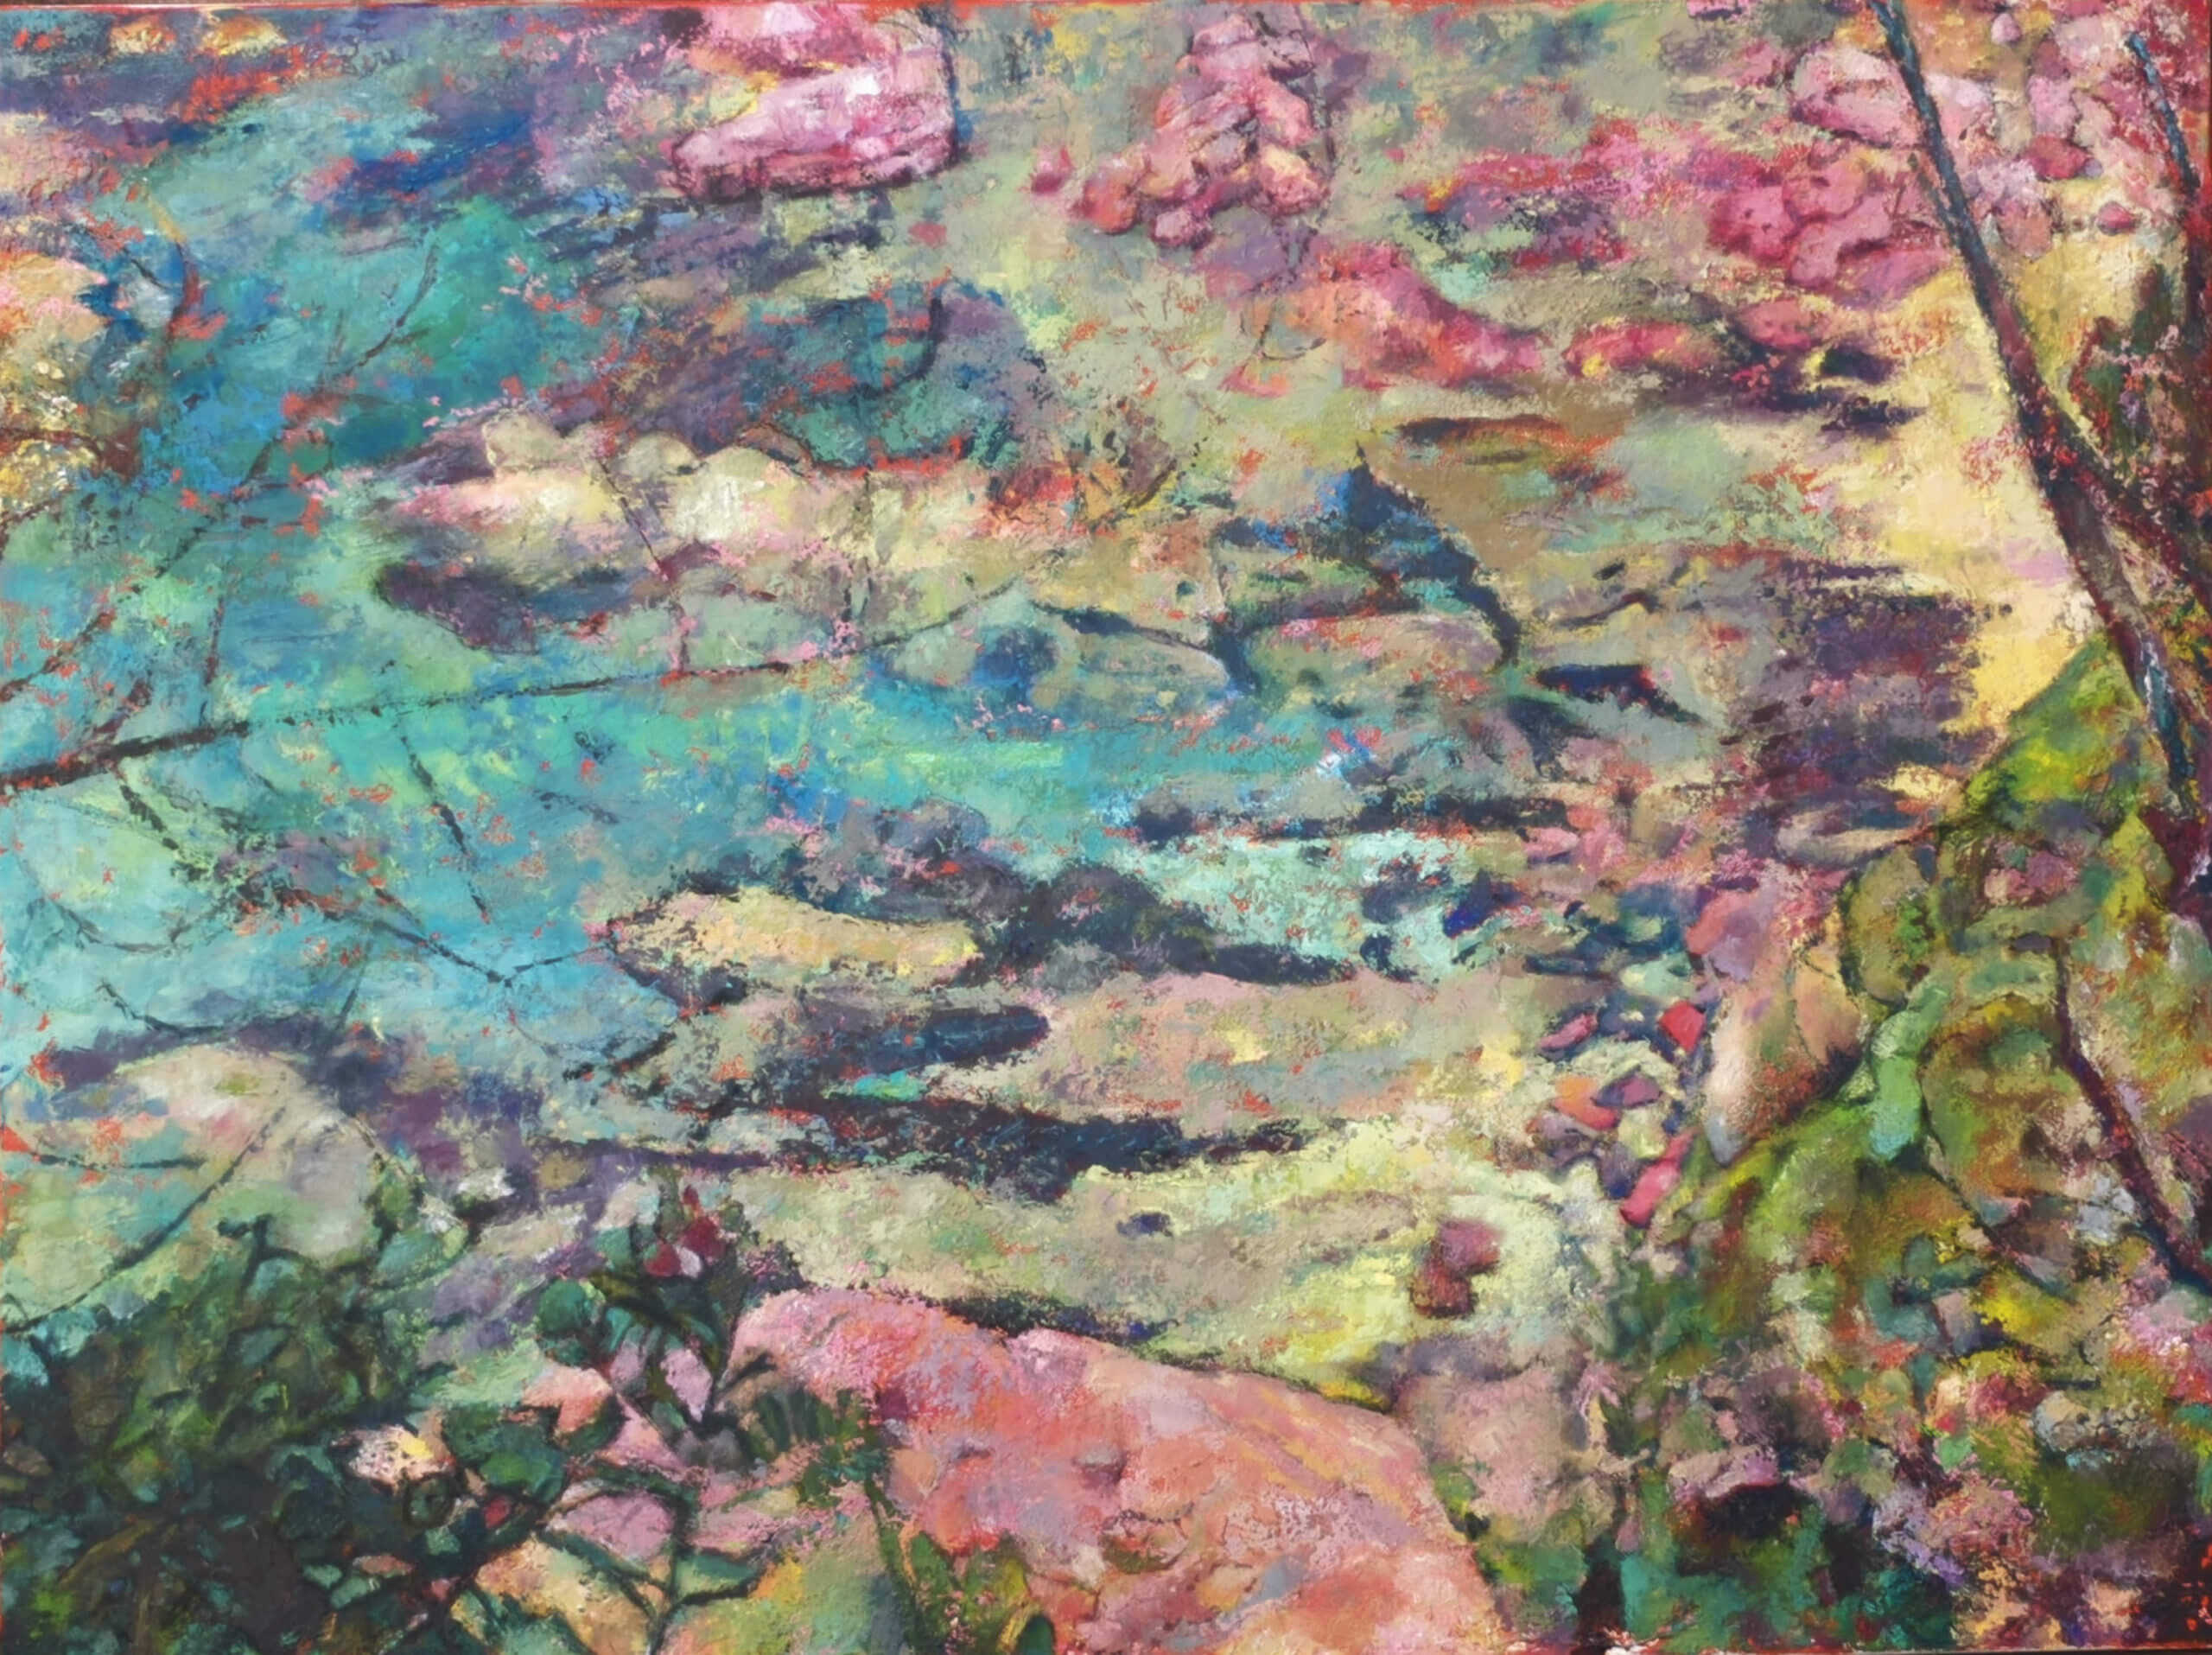 'Eden Cove', acrylic on canvas, 3' x 4' 2015